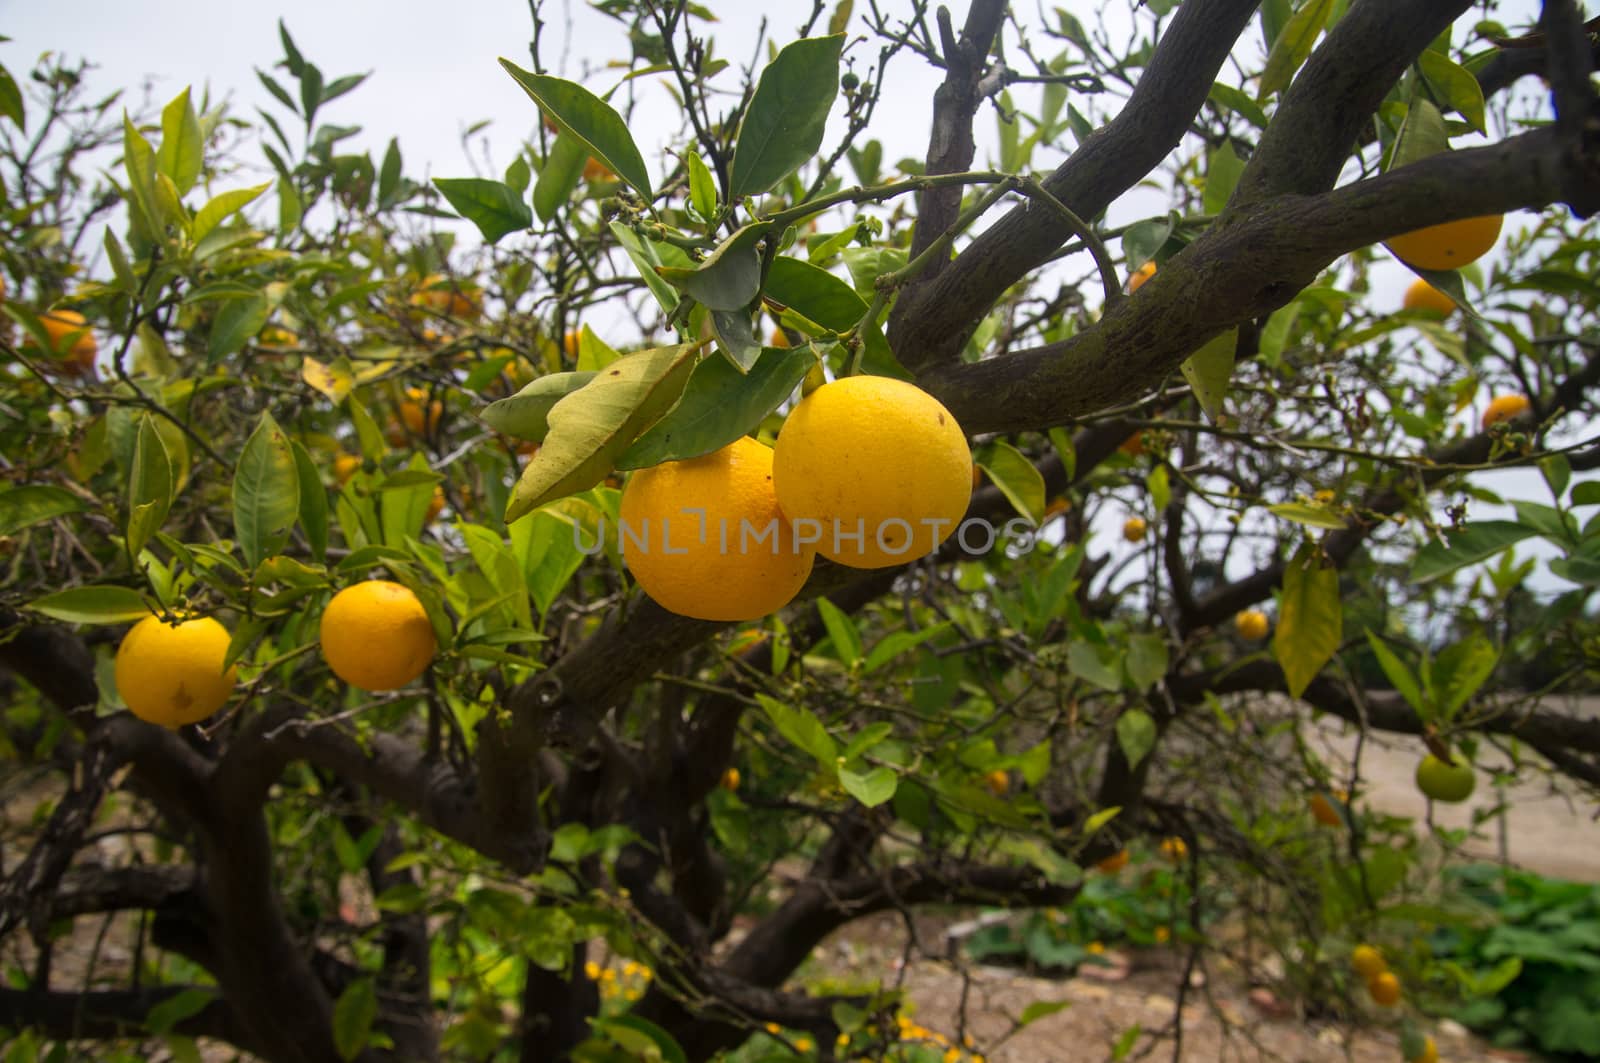 Ripe oranges on tree in California